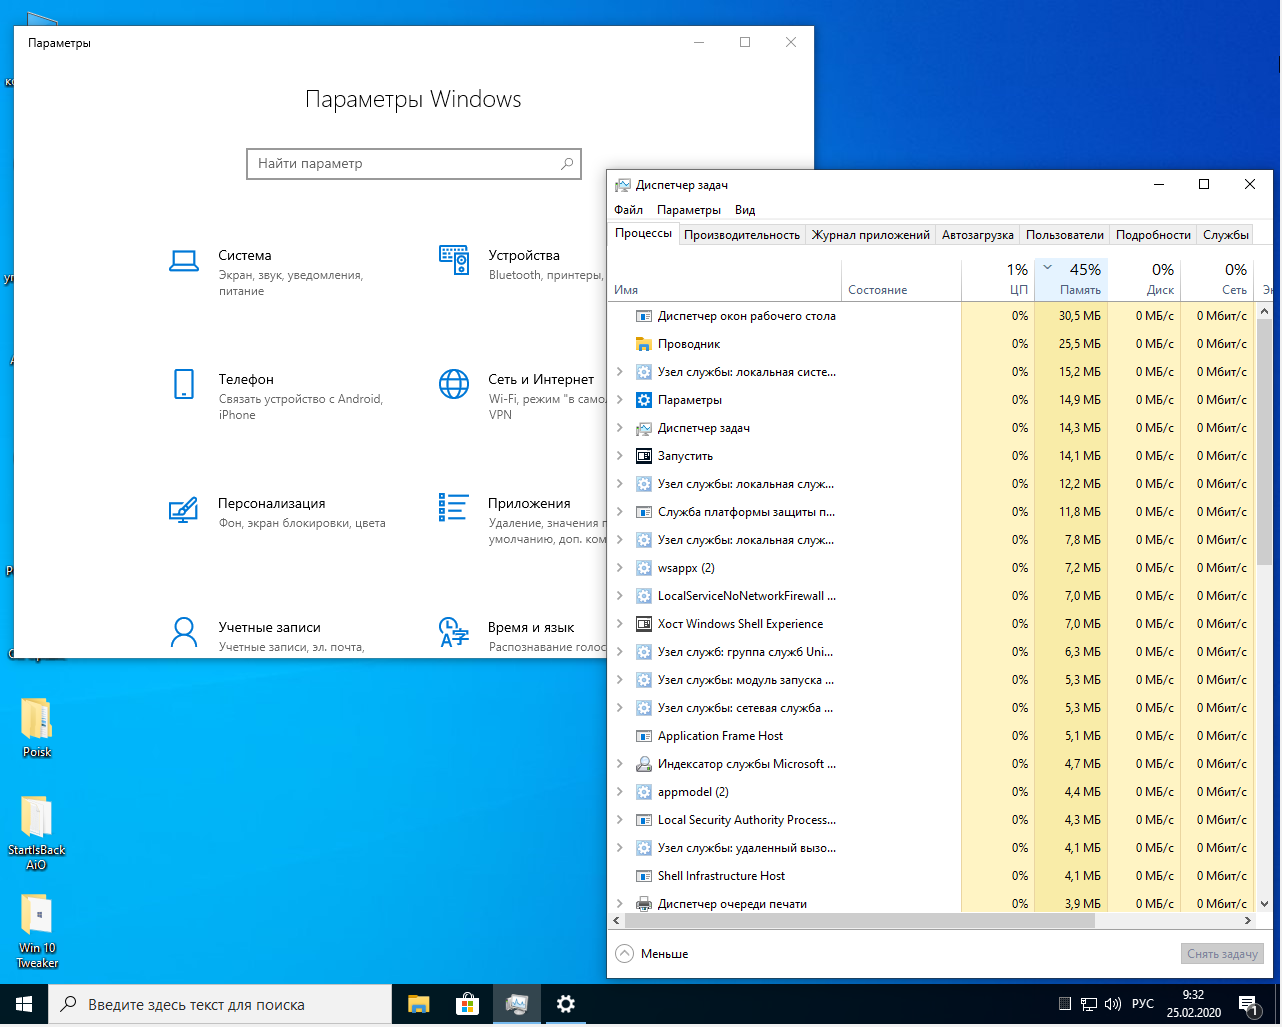 Сборки виндовс для слабых ноутбуков. Самая легкая Windows. Windows 10 сборка для слабых ПК. Лёгкая версия Windows 10 для слабых ноутбуков. Новая сборка виндовс